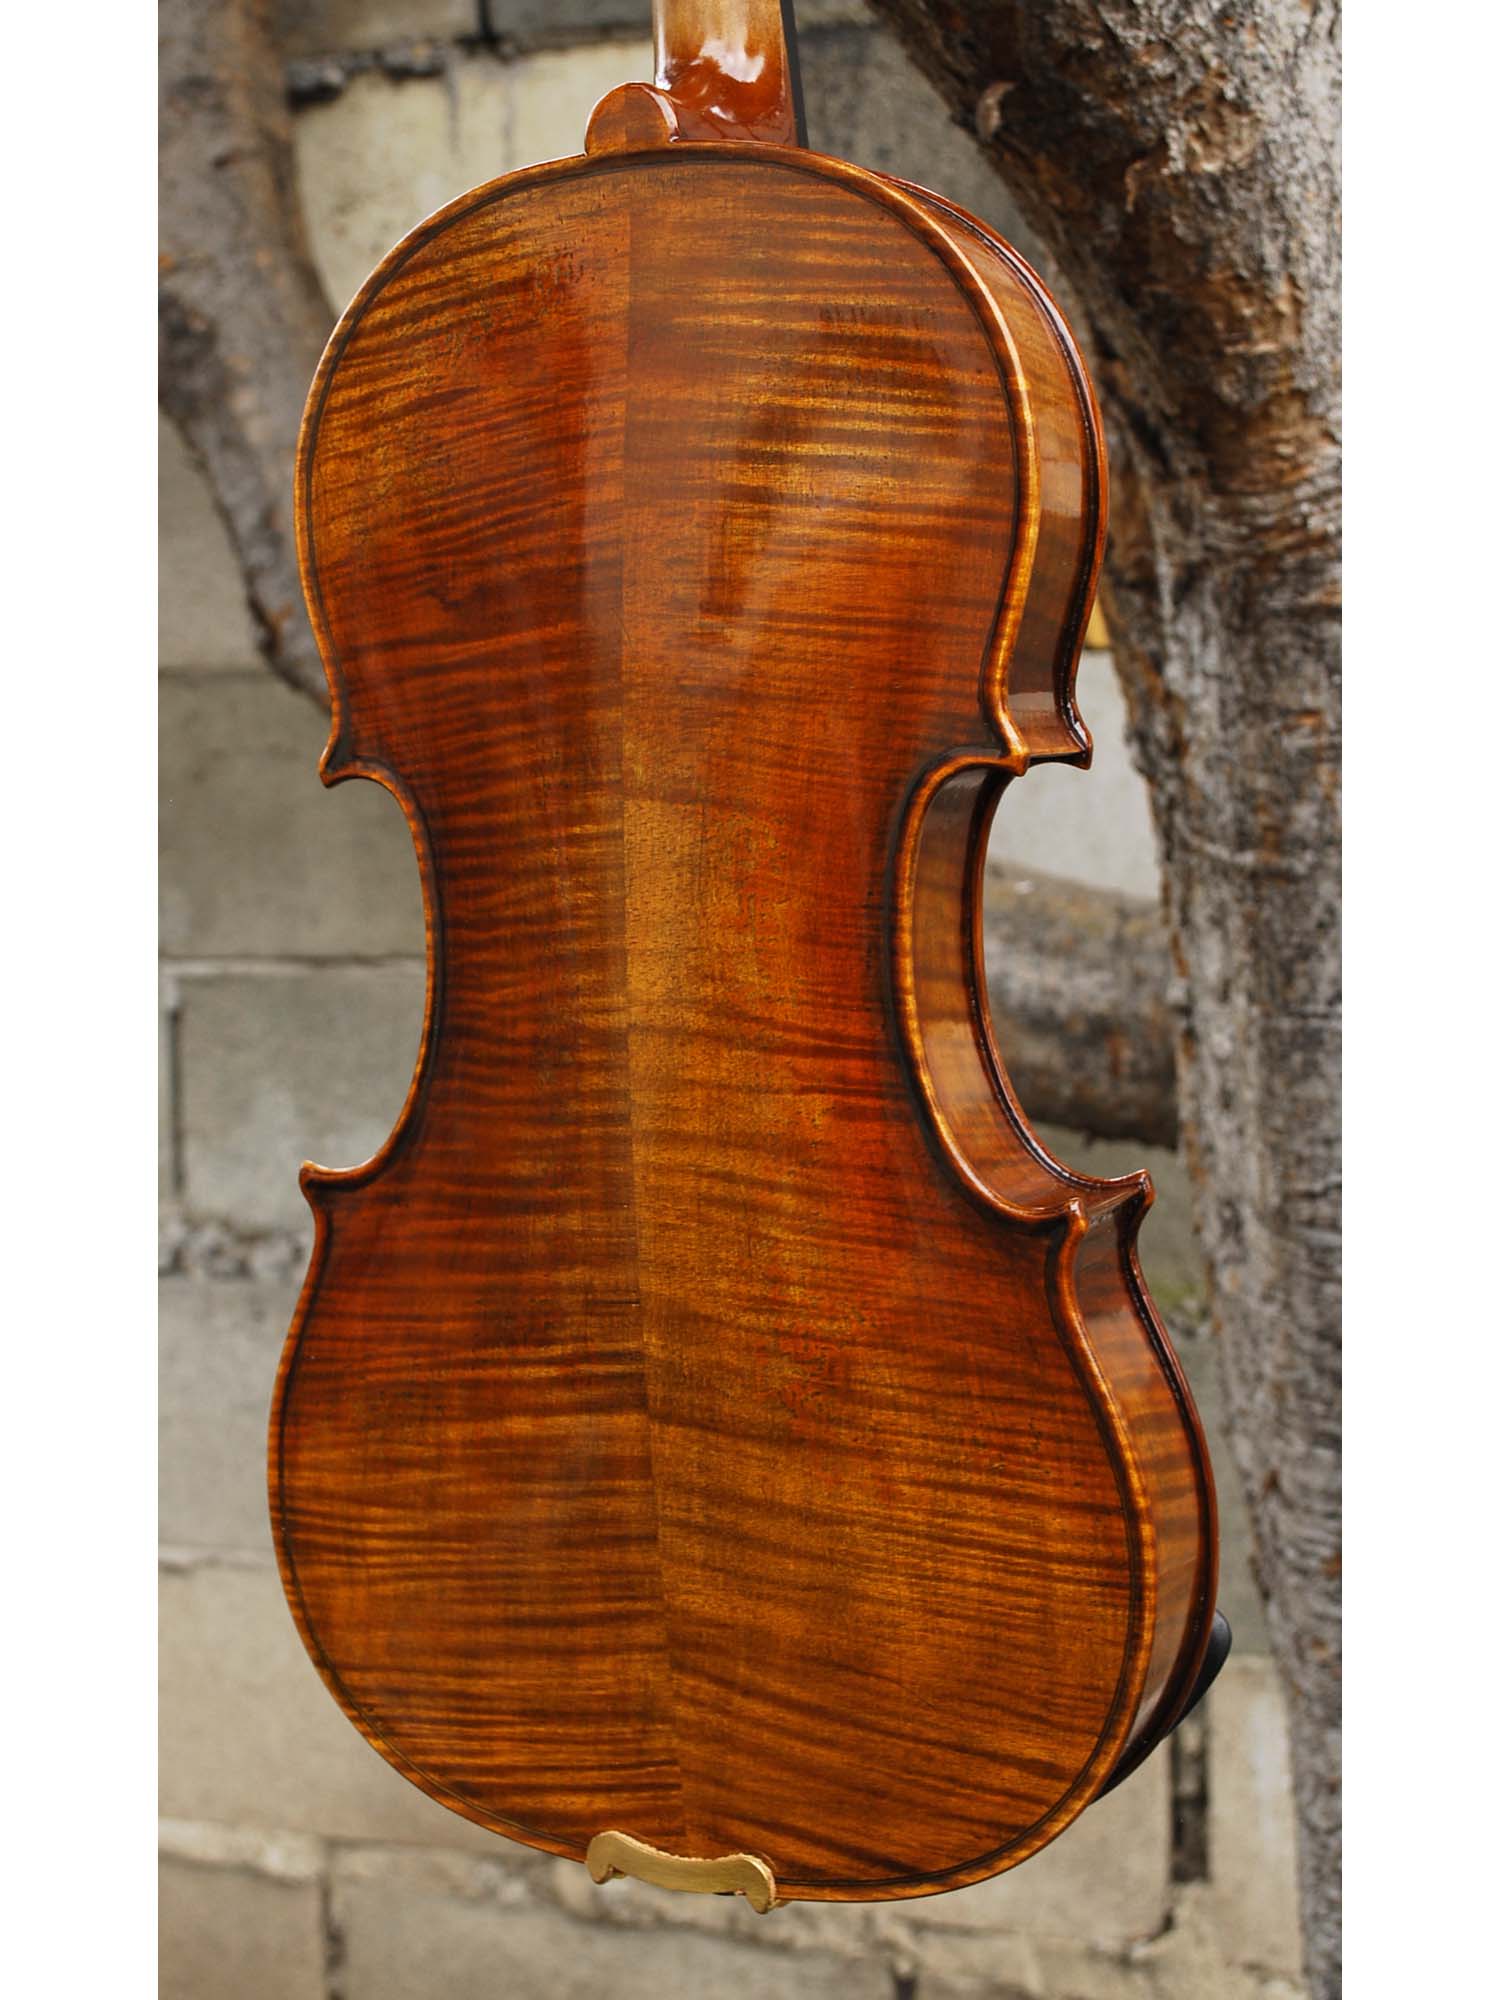 Camillo Callegari 1742 Guarneri Replica 4/4 Violin